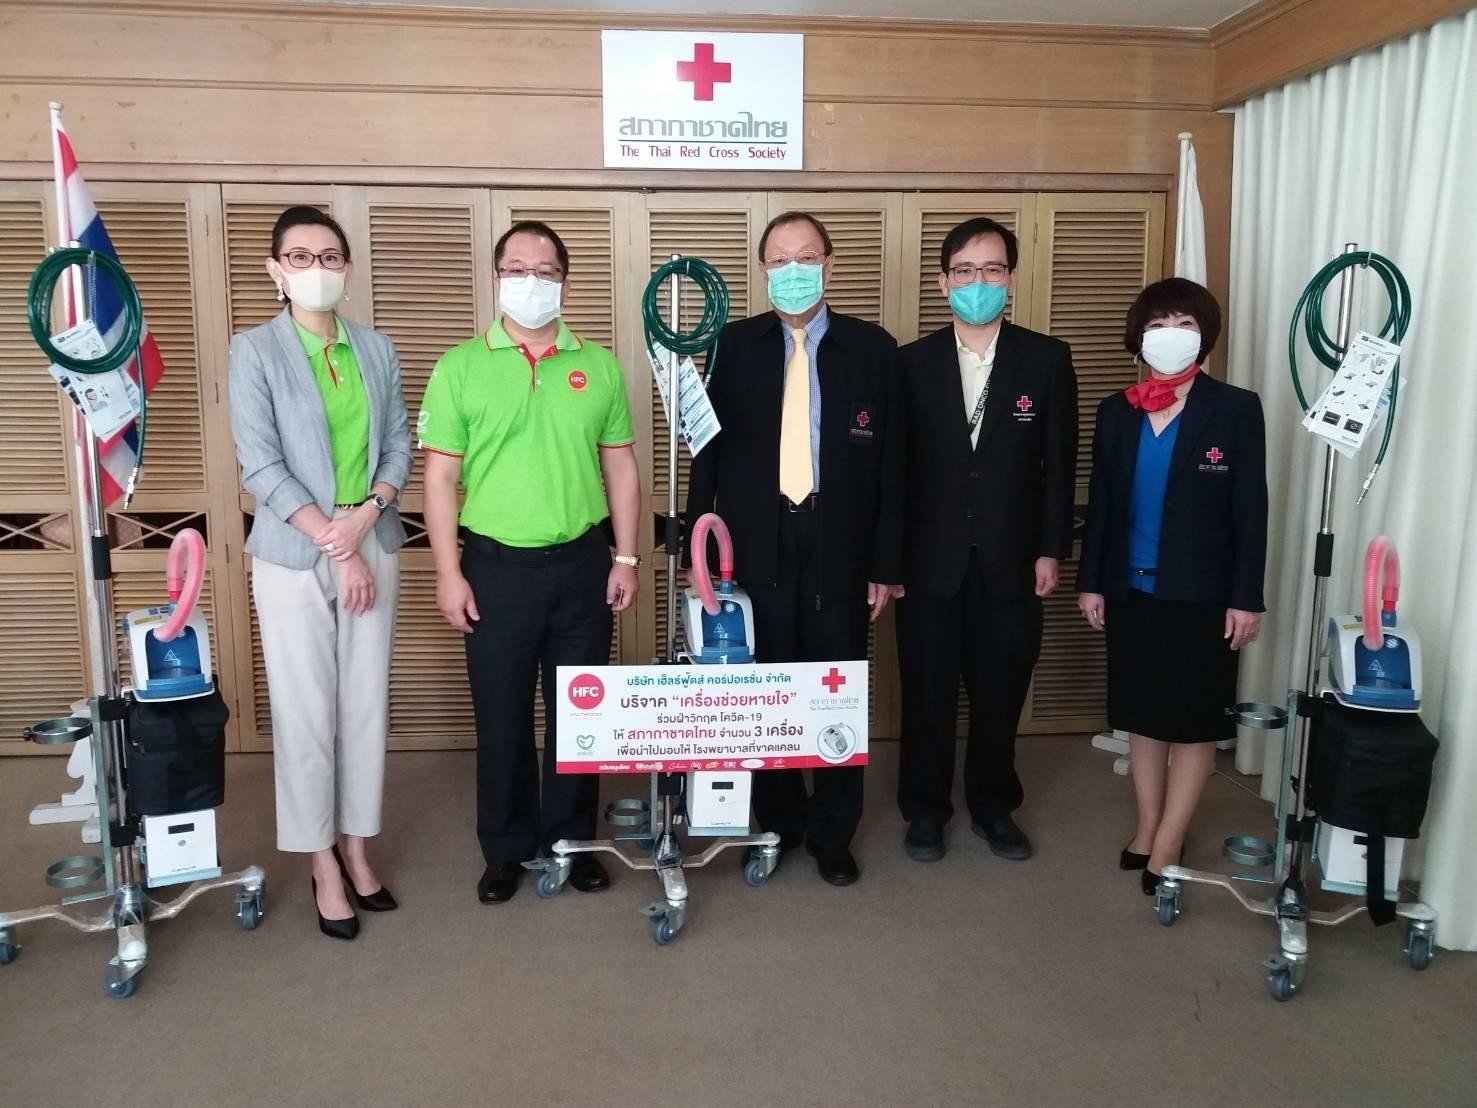 ส่งต่อความช่วยเหลือสู่สังคม มอบเครื่องช่วยหายใจชุดแรกให้แก่ สภากาชาดไทย ช่วยเหลือผู้ป่วยโควิด-19